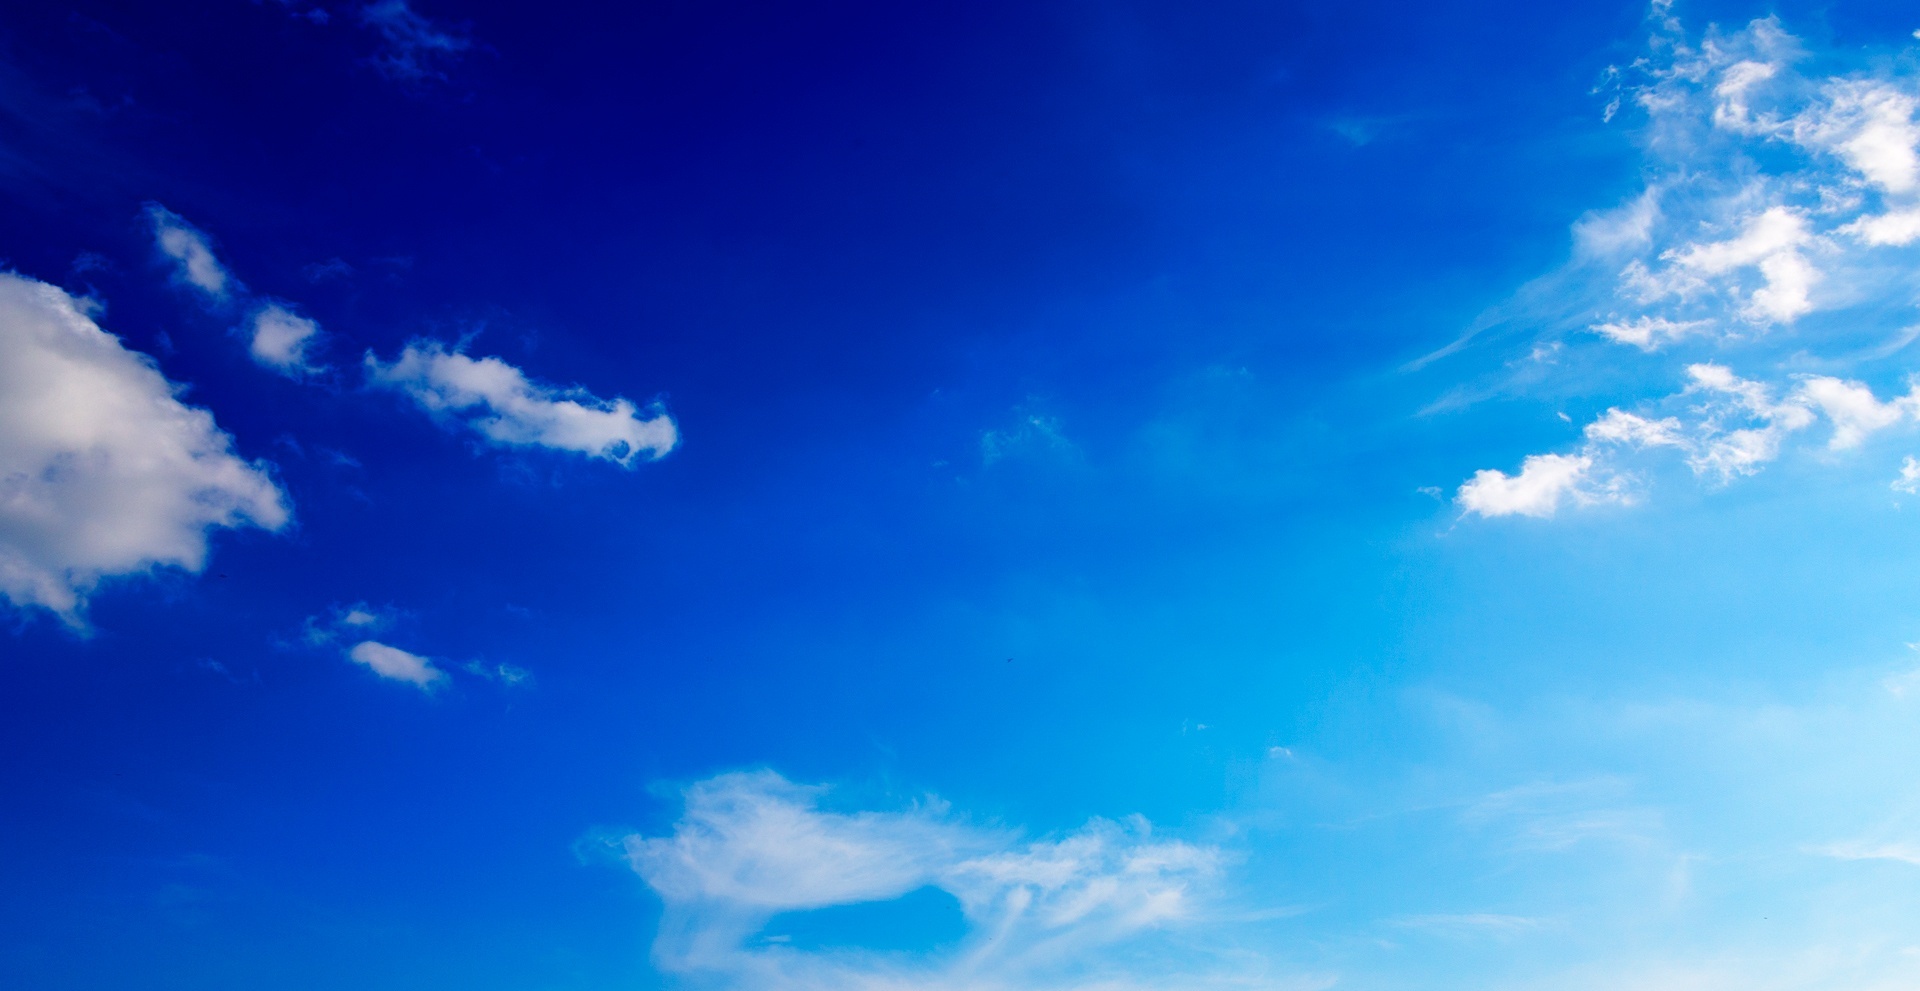 skt wallpaper,sky,cloud,blue,daytime,atmosphere